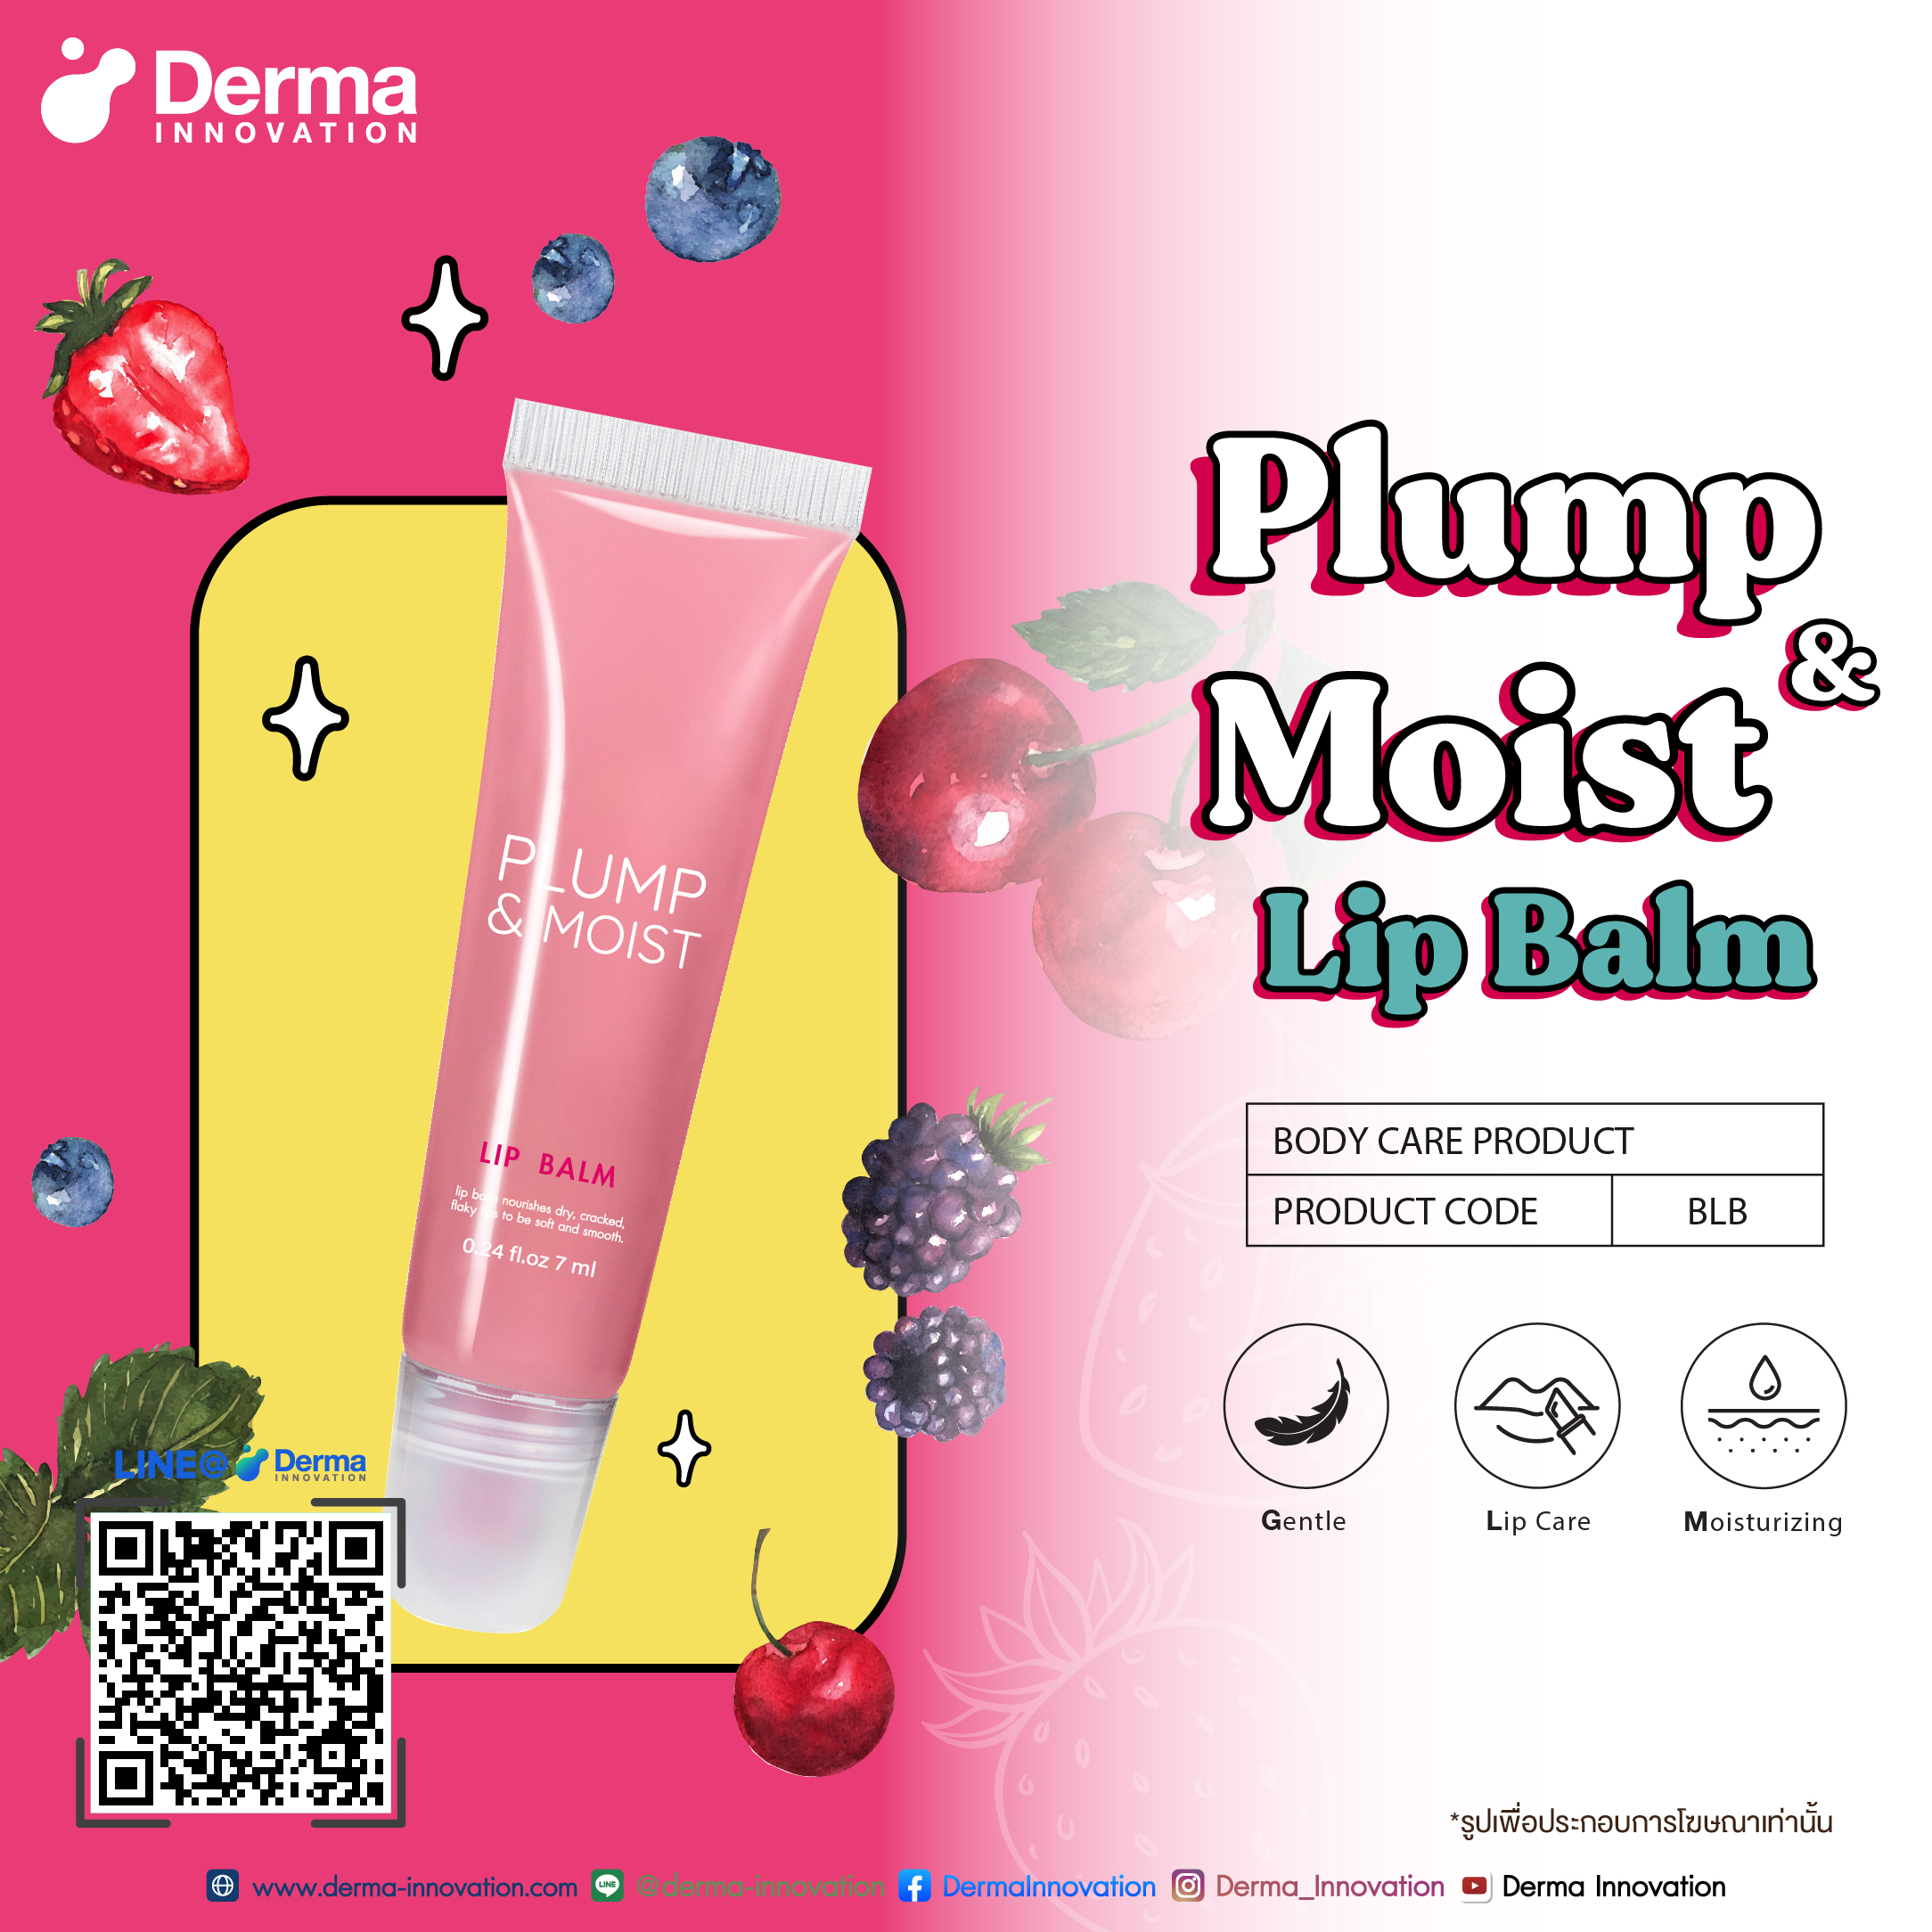 Plump & Moist Lip Balm